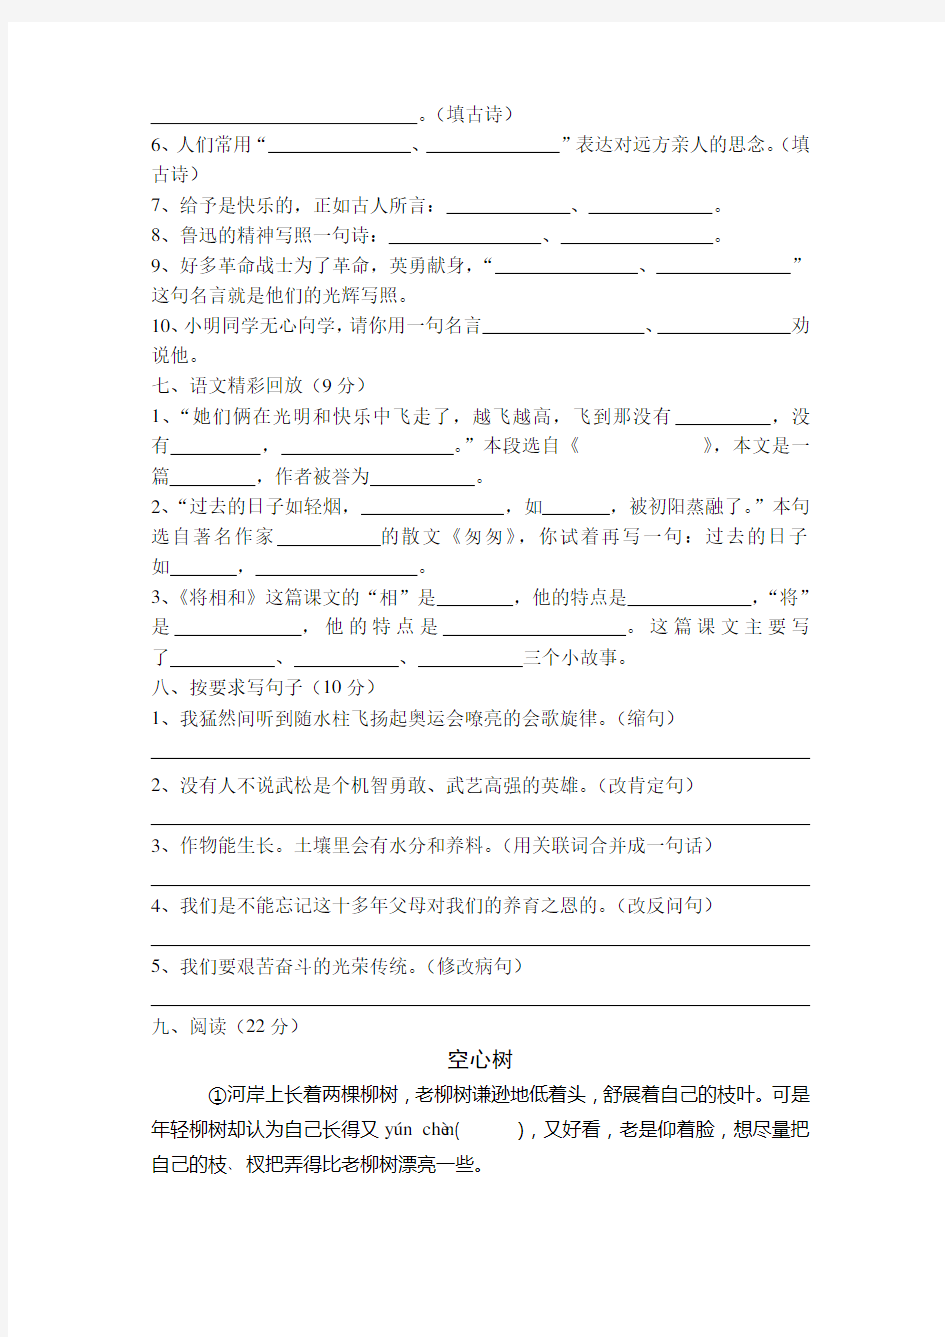 深圳市小学六年级语文毕业考试试卷及答案